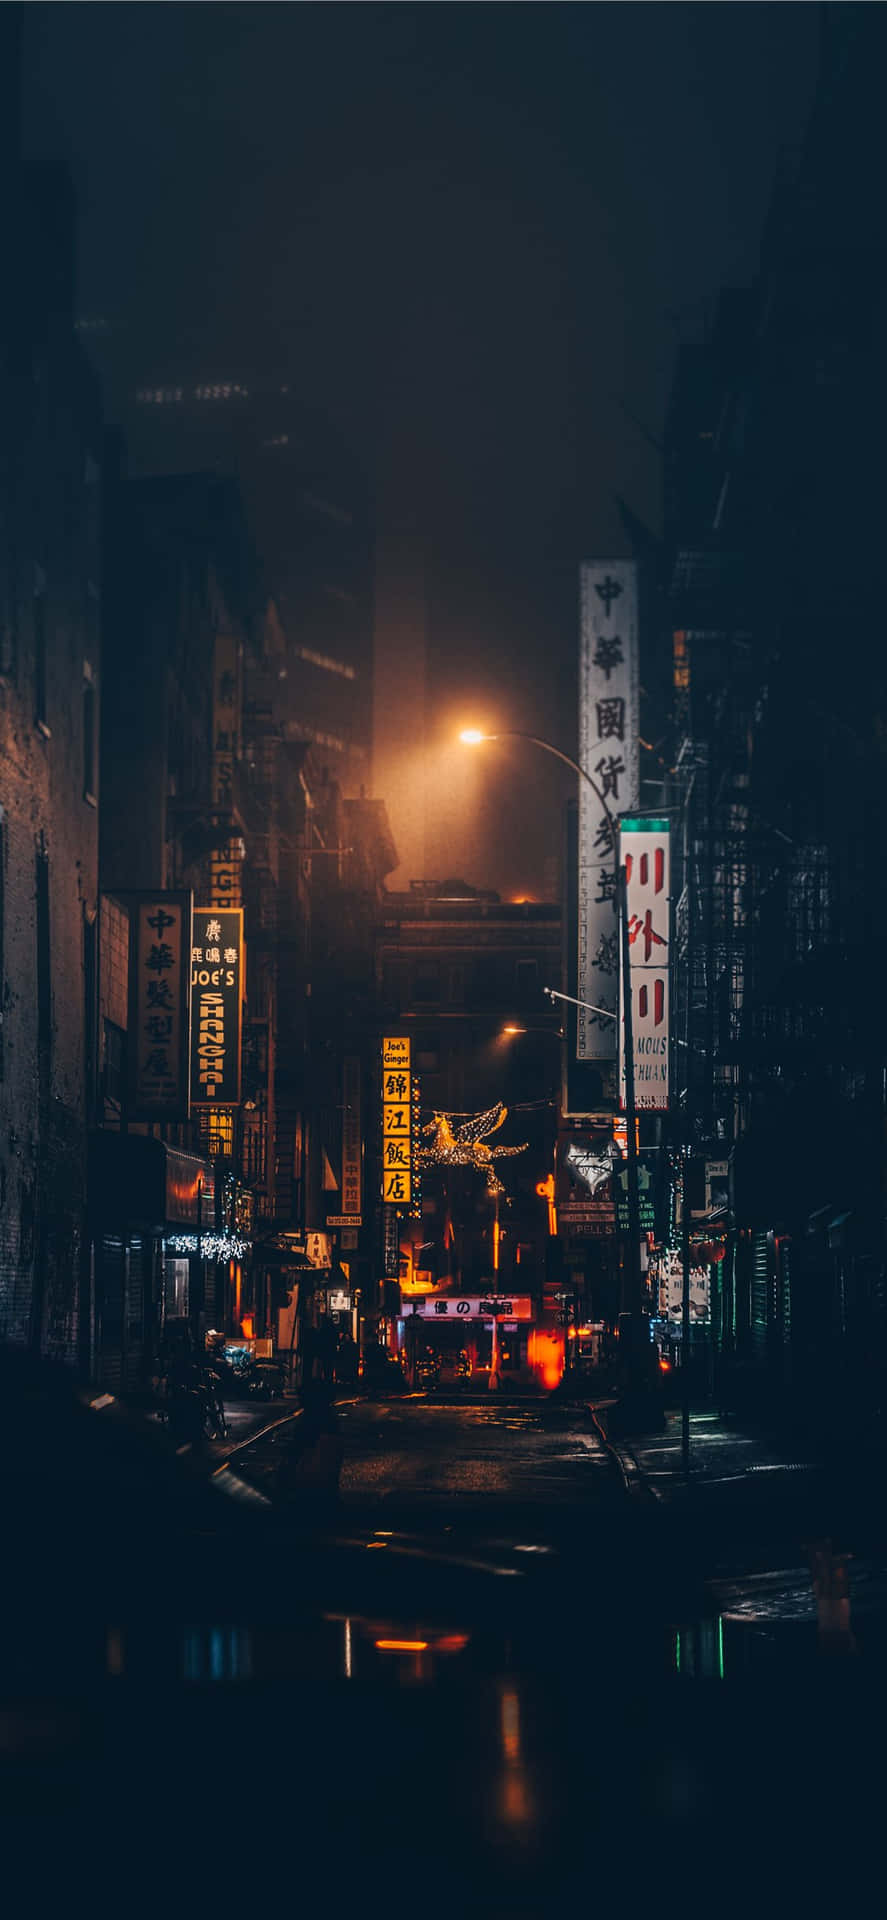 Iphonex Bakgrundsbild För Natten I Chinatown I New York City.